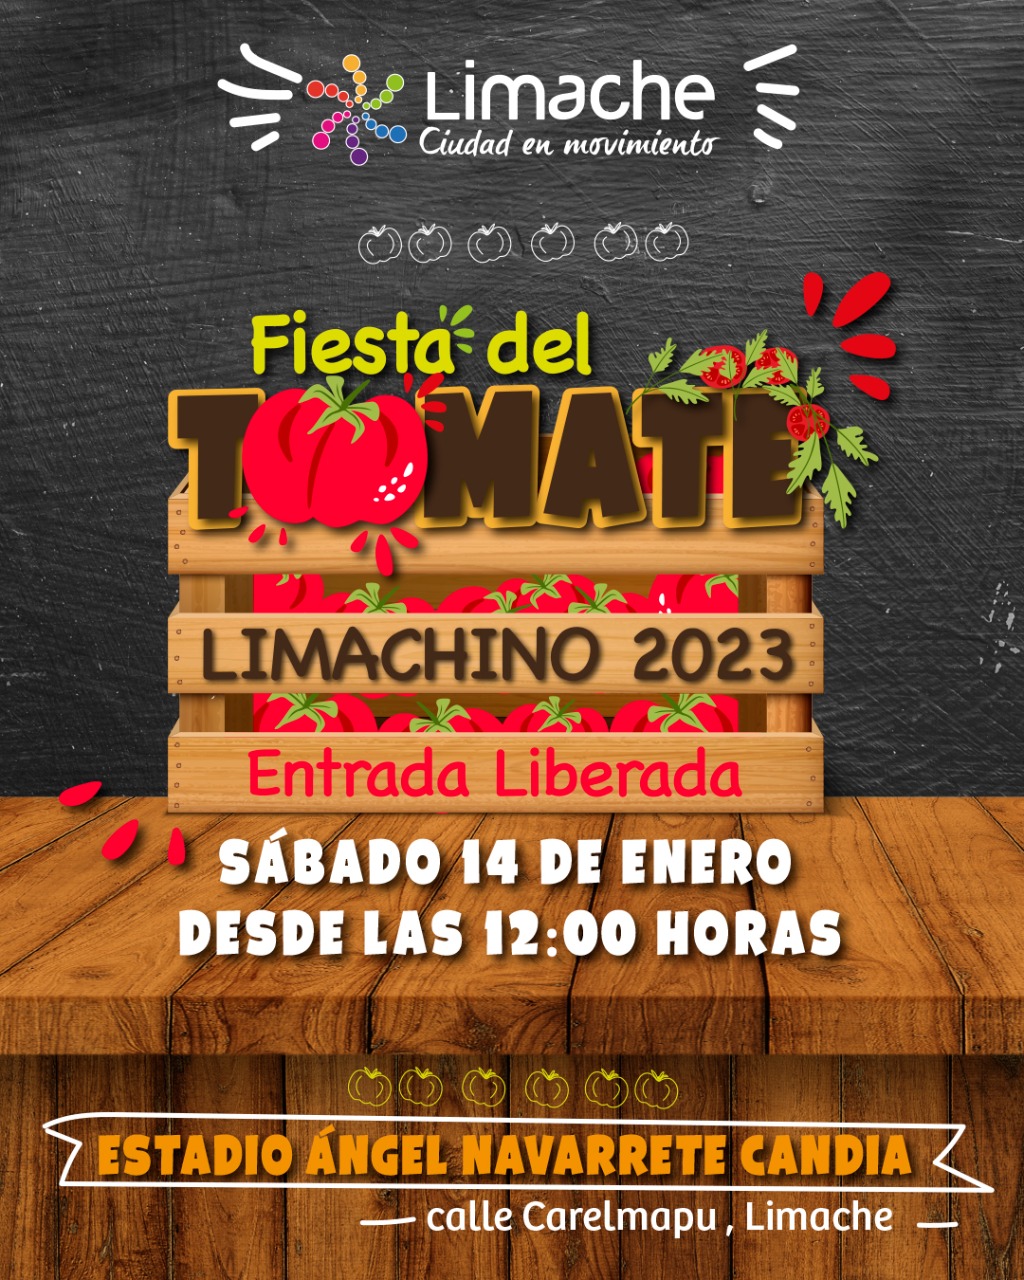 La Fiesta del Tomate vuelve a Limache en enero de 2023